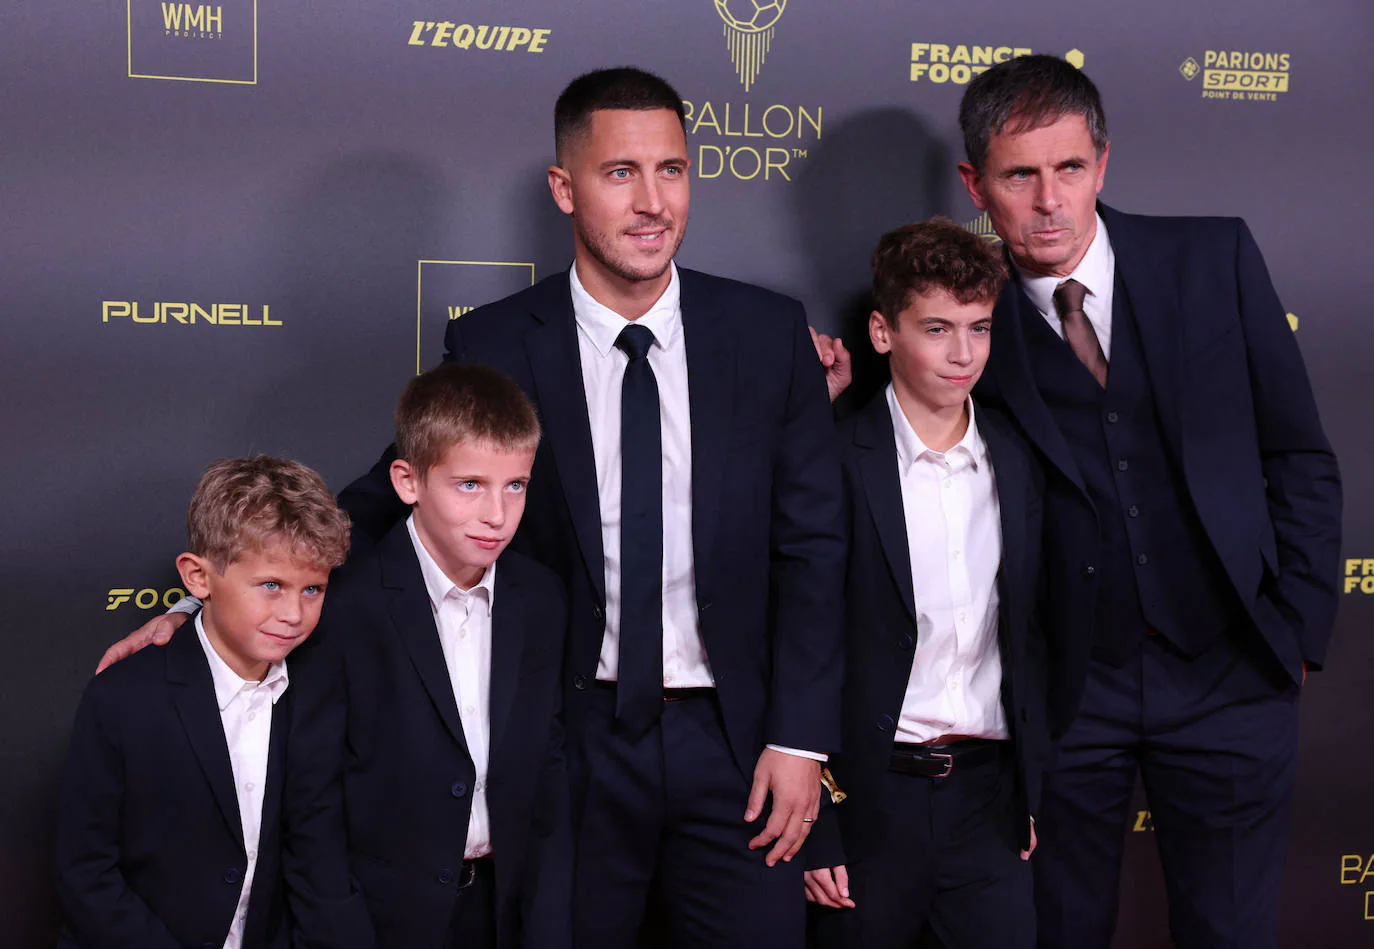 Eden Hazard, exfutbolista de Lille, Chelsea y Real Madrid, llega a la gala acompañado por su familia.